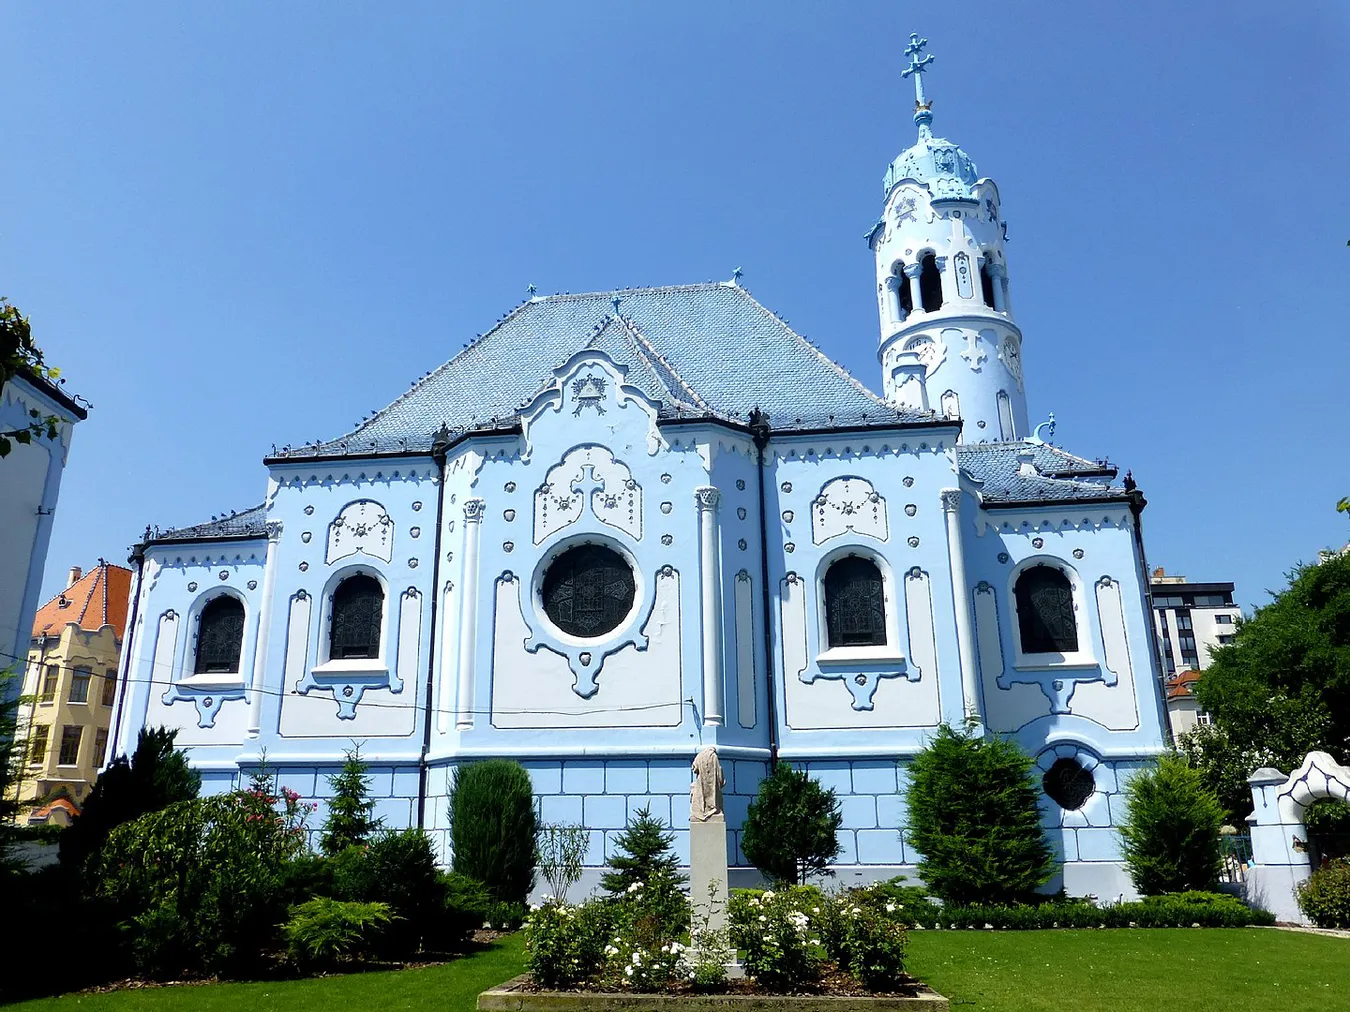 Imagen de Una colorida y solemne experiencia en la Iglesia azul de Bratislava